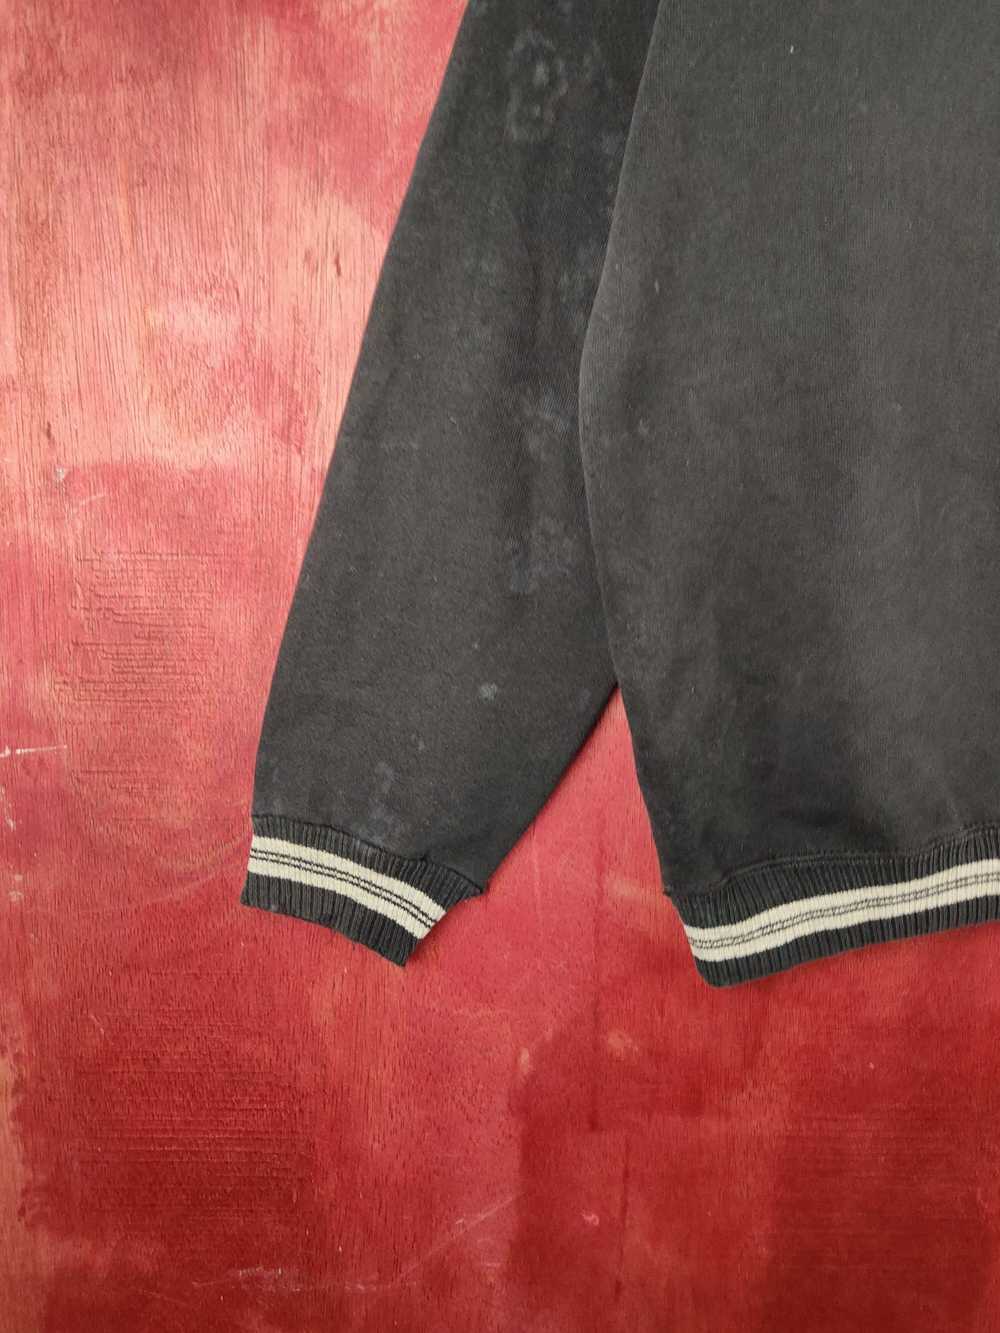 Streetwear × Vintage Discus Black Faded Sweatshir… - image 4